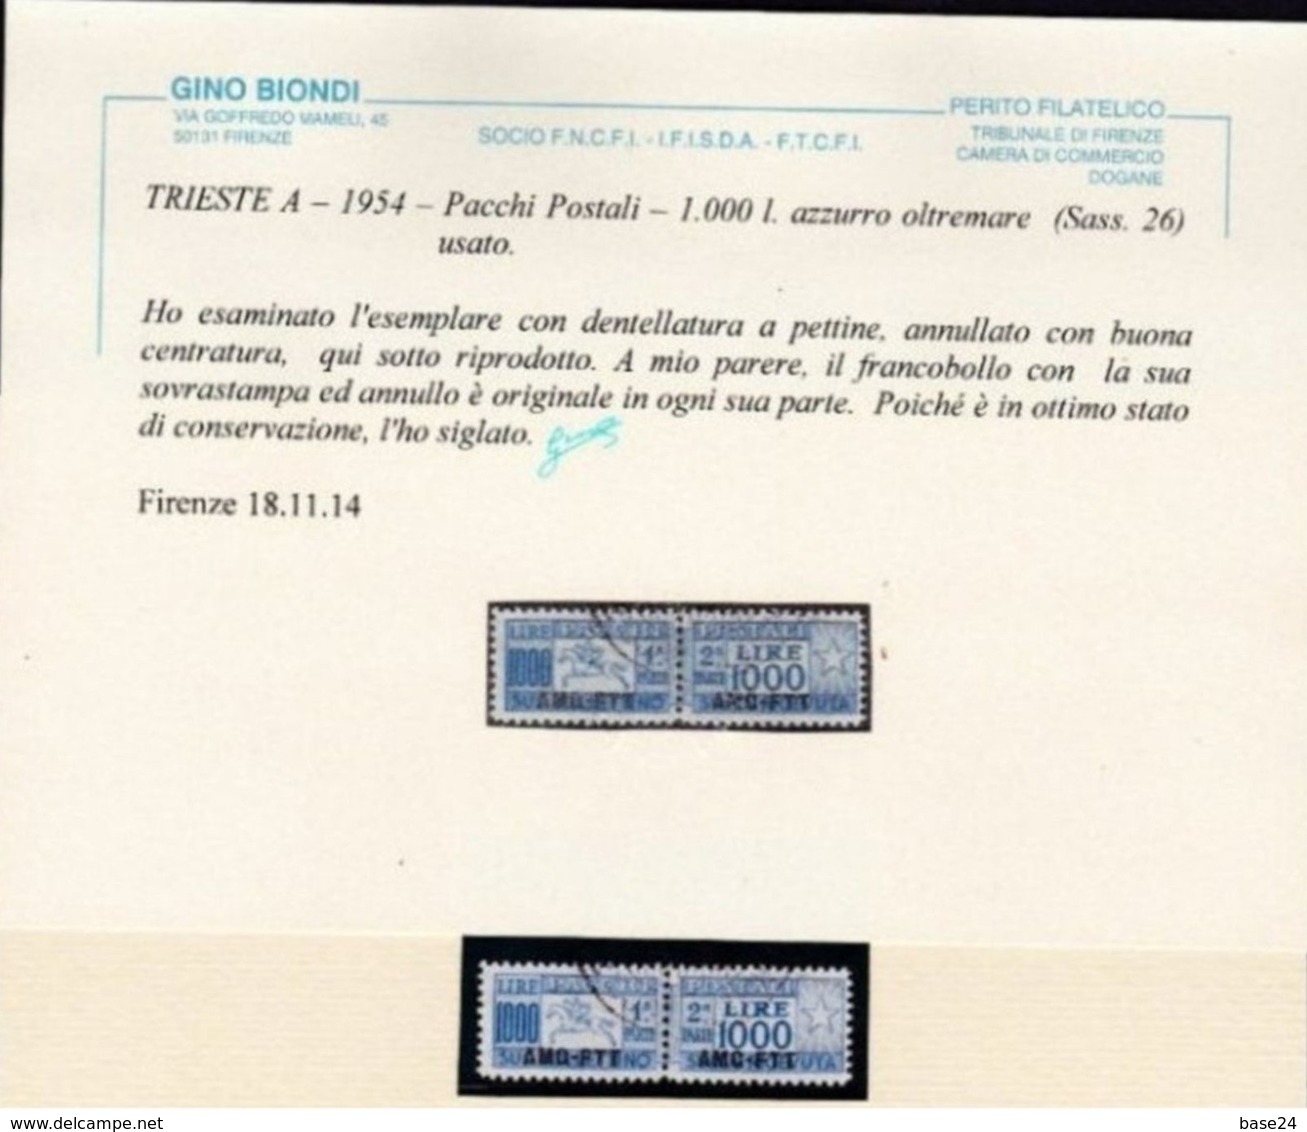 1954 Italia Italy Trieste A  CAVALLINO 1000 LIRE Usato Dent. A Pettine 26/I Certificato Biondi Pacchi Postali Parcel P. - Colis Postaux/concession